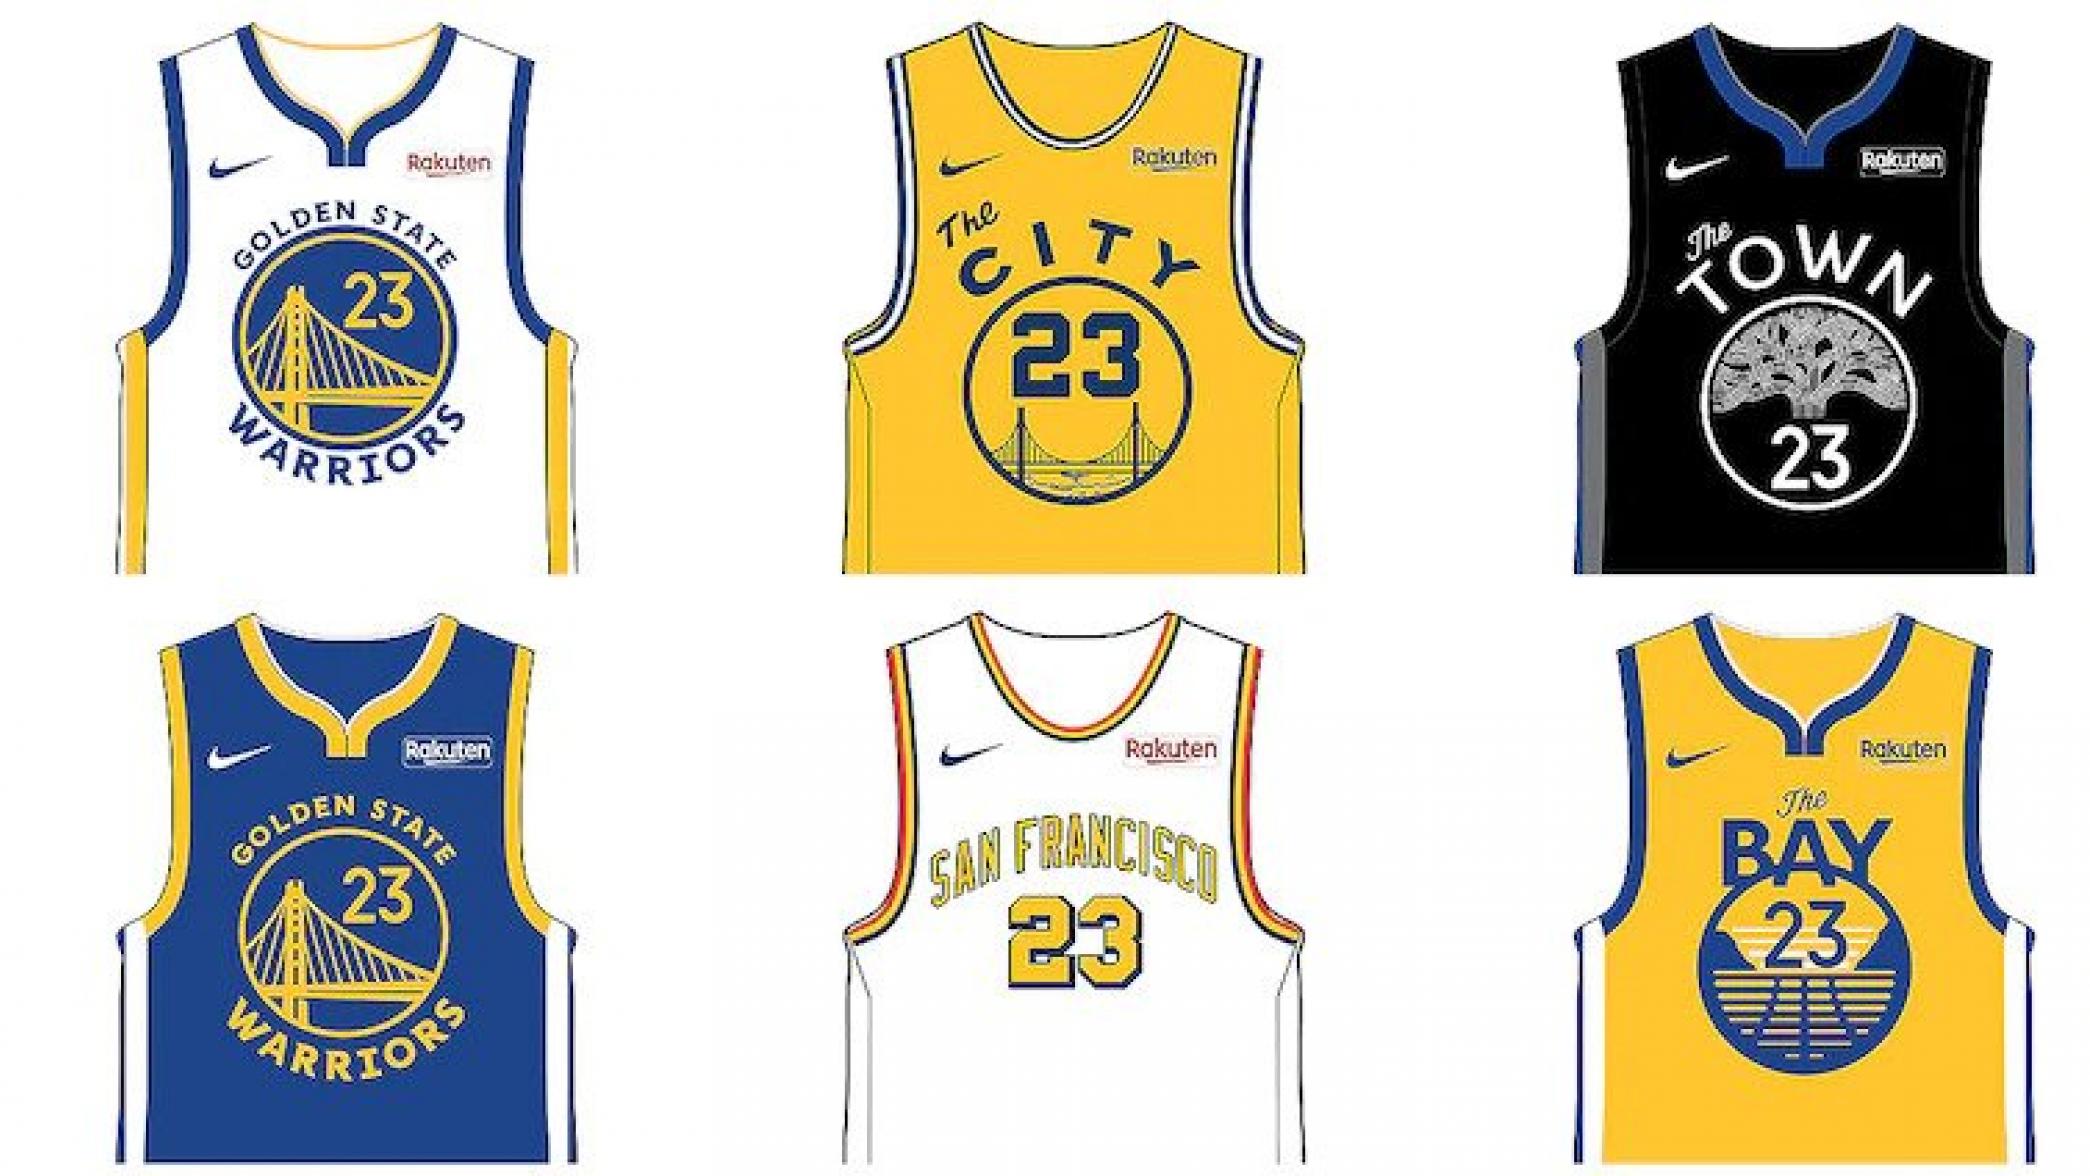 金州勇士隊為2019-20賽季推出6款新的球衣設計 運動 第1張